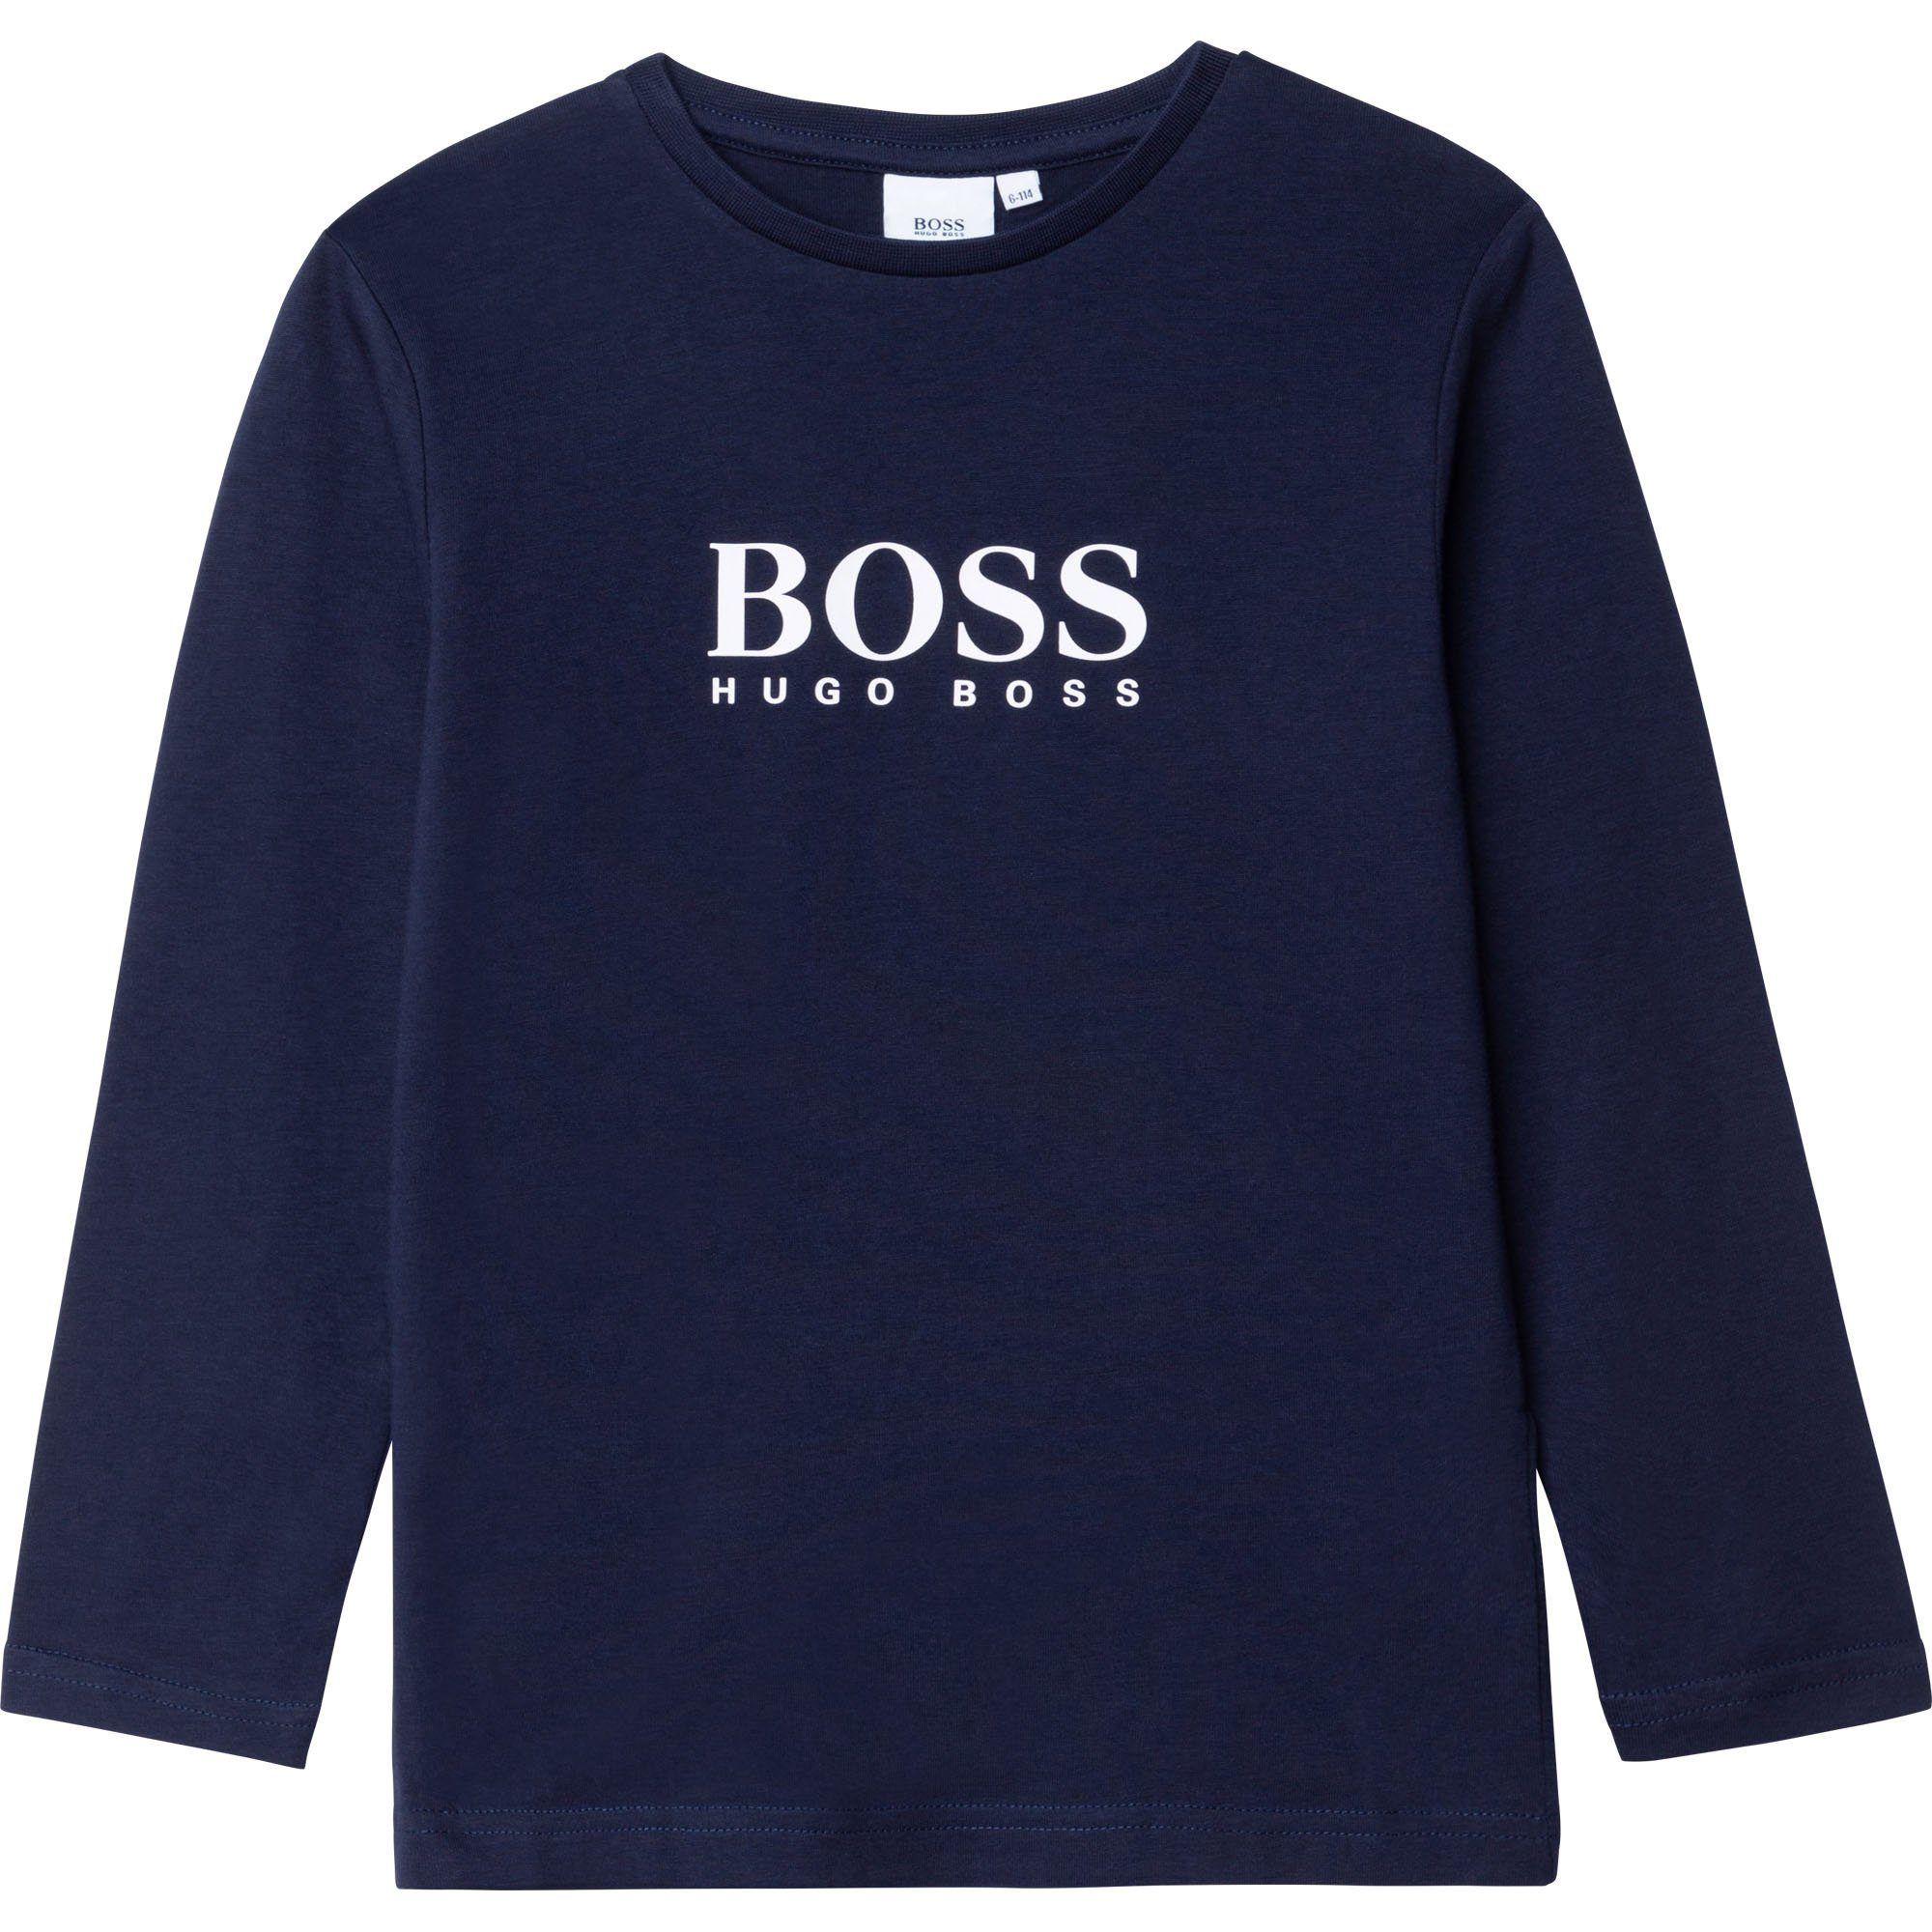 BOSS Longsleeve »HUGO BOSS Kids Longsleeve T-Shirt Langarmshirt navy mit  Logo 4-16 Jahre« online kaufen | OTTO